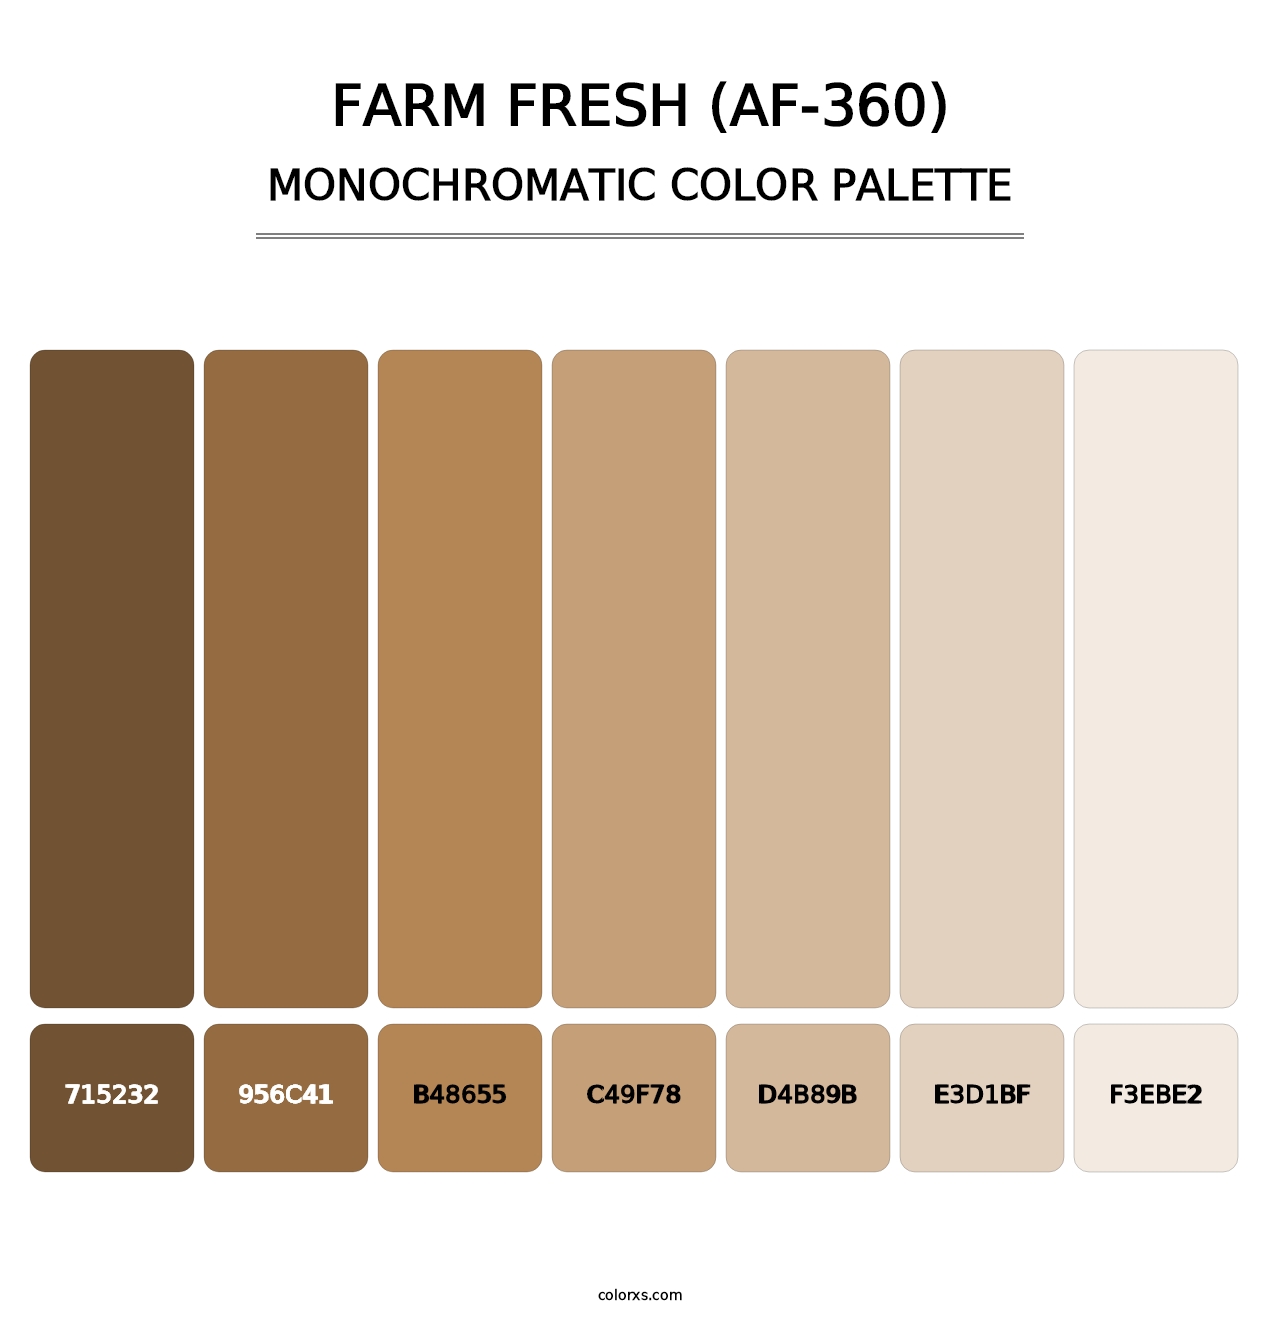 Farm Fresh (AF-360) - Monochromatic Color Palette